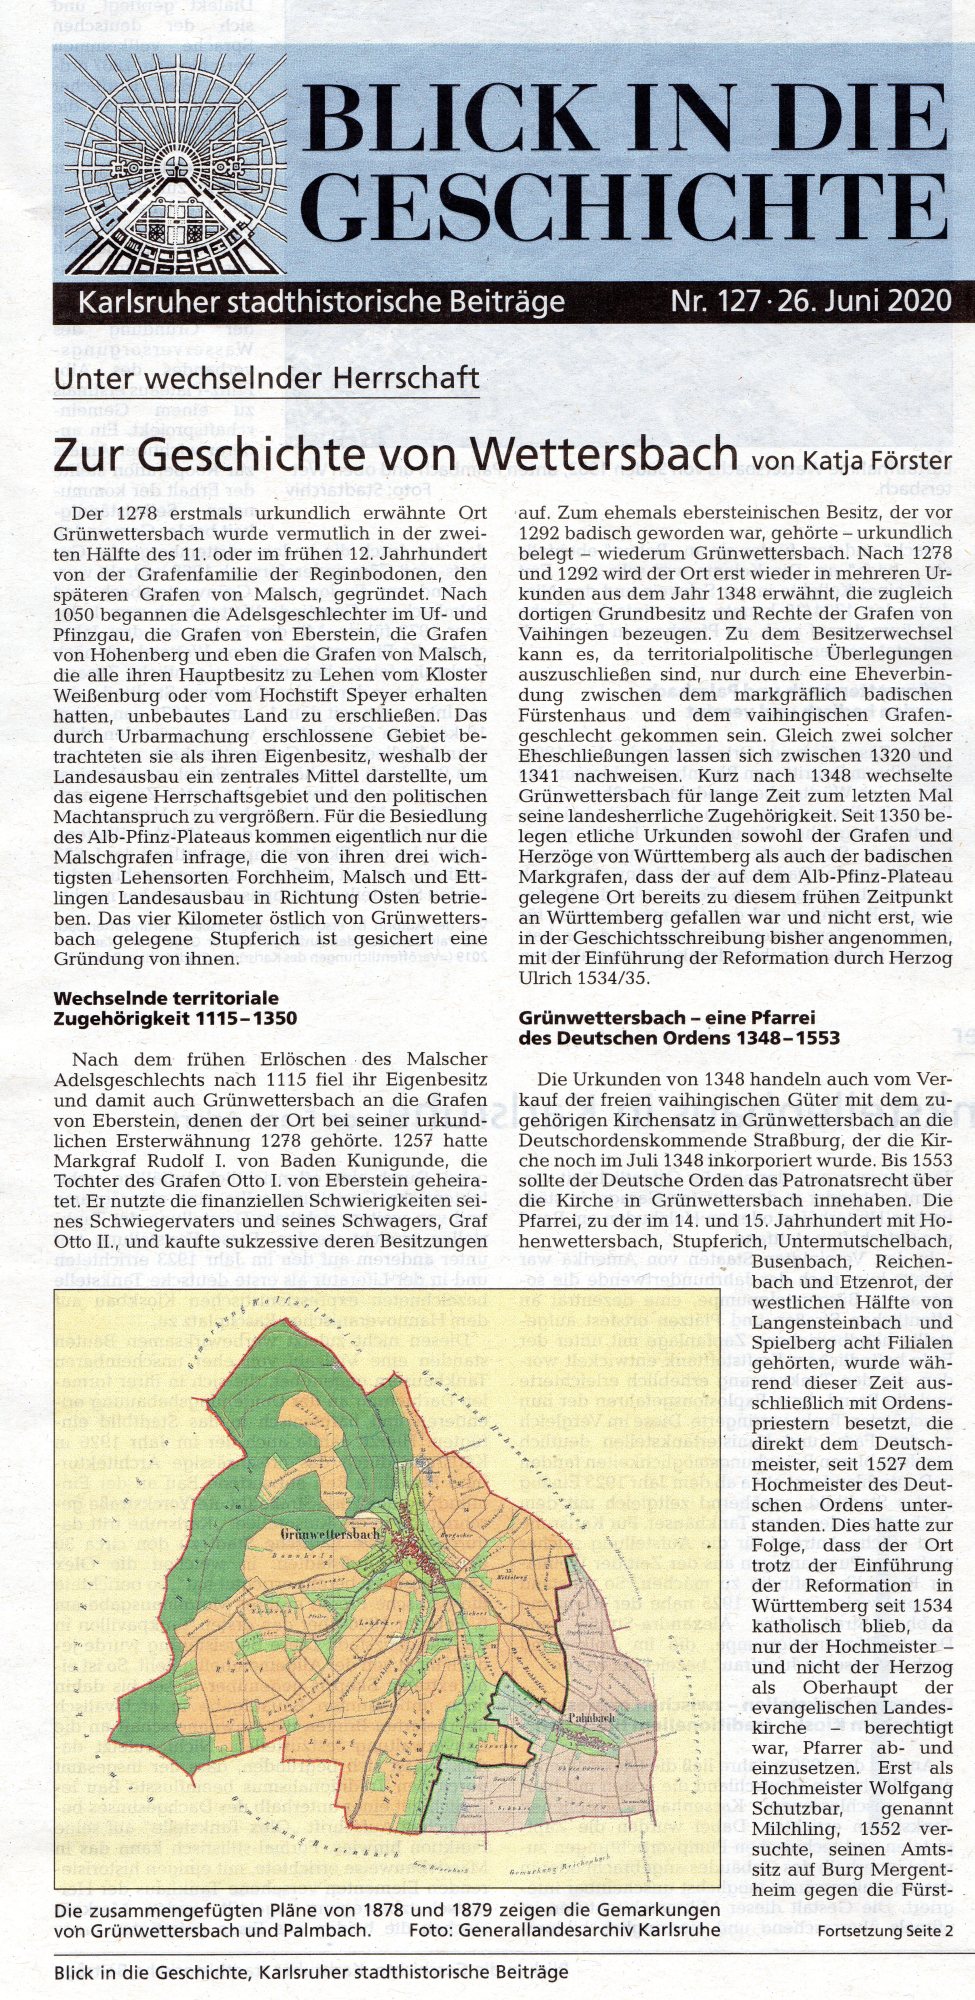 "Zur Geschichte von Wettersbach" von Katja Förster, Stadtzeitung Karlsruhe am 26.06.2020